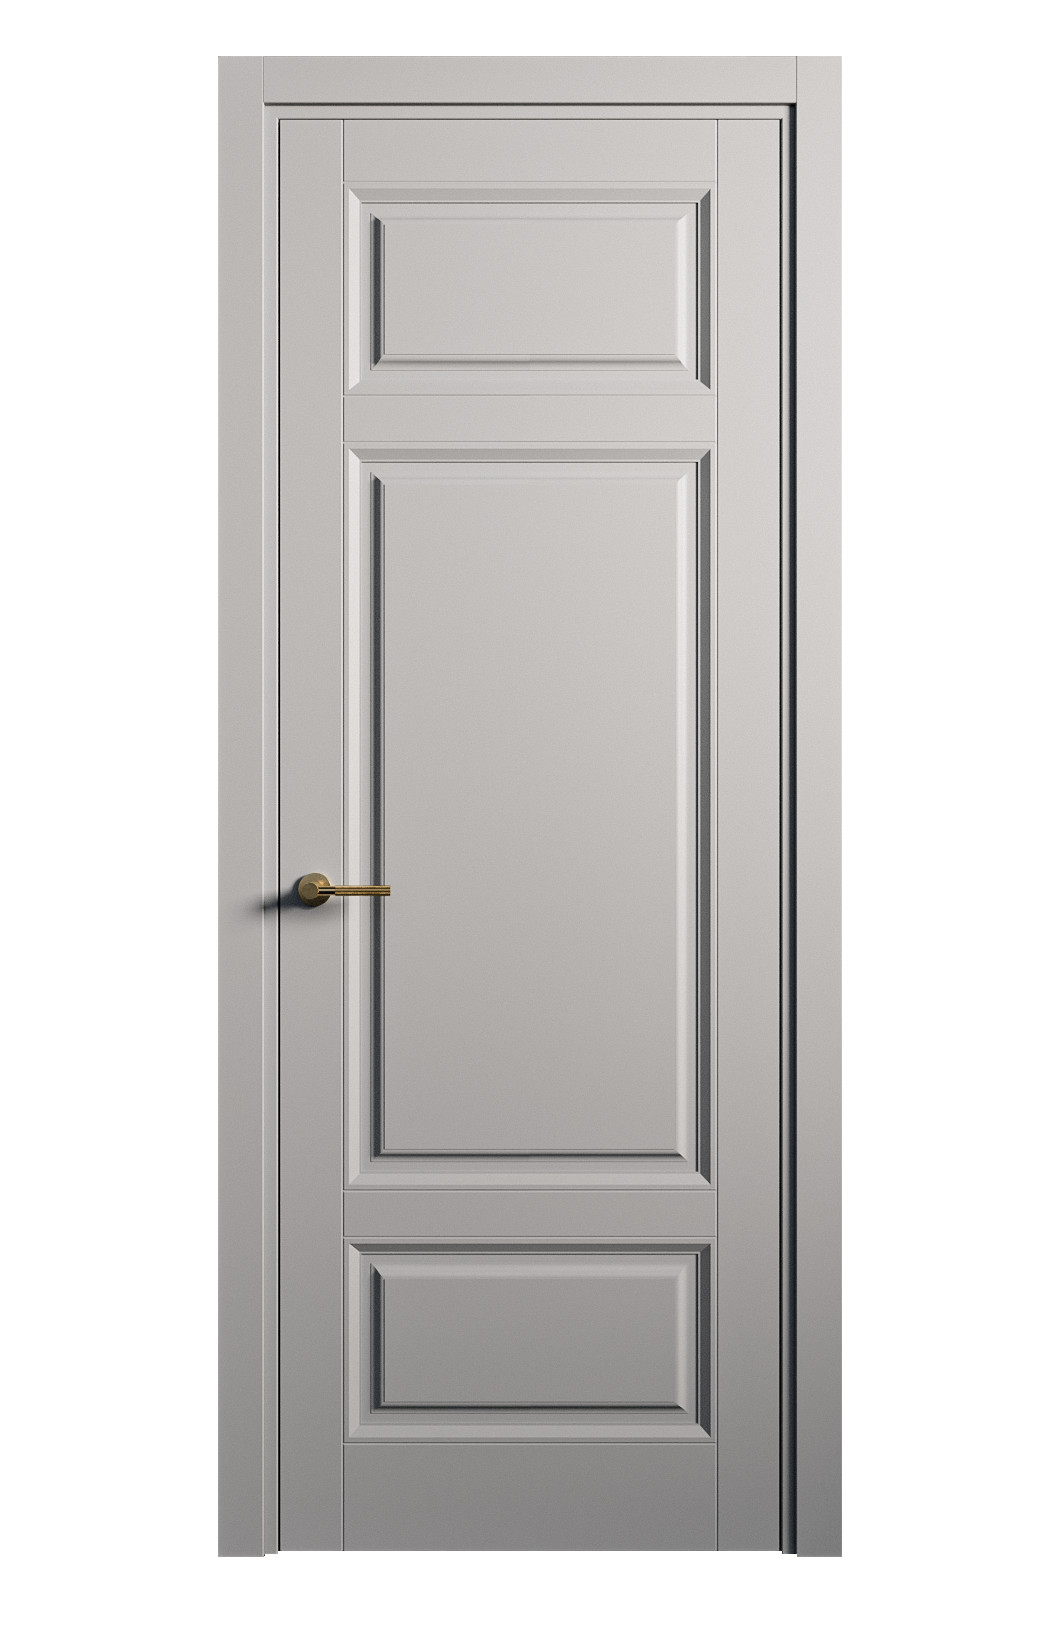 Межкомнатная дверь Venezia-5 глухая эмаль ral 7040 25902